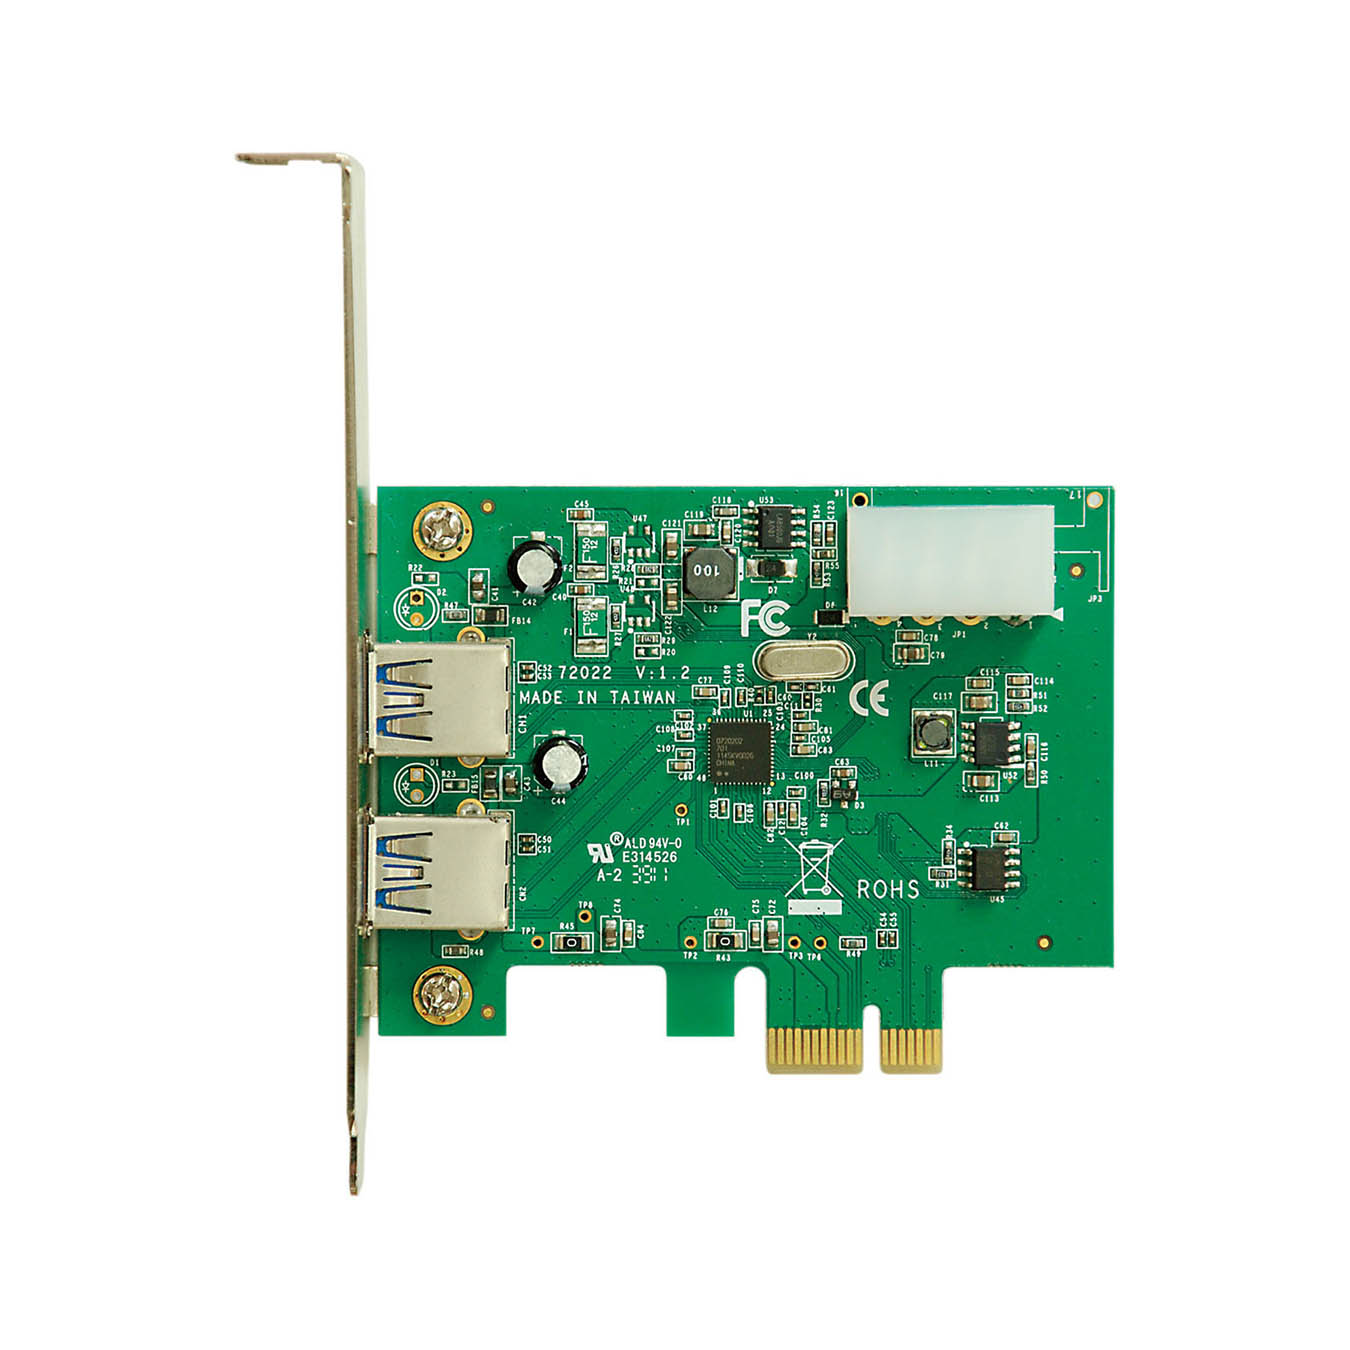 USB3.0-PCIE-P2 | Renesas社製 μPD720202搭載 USB3.0 インターフェース(PCI-Express x1